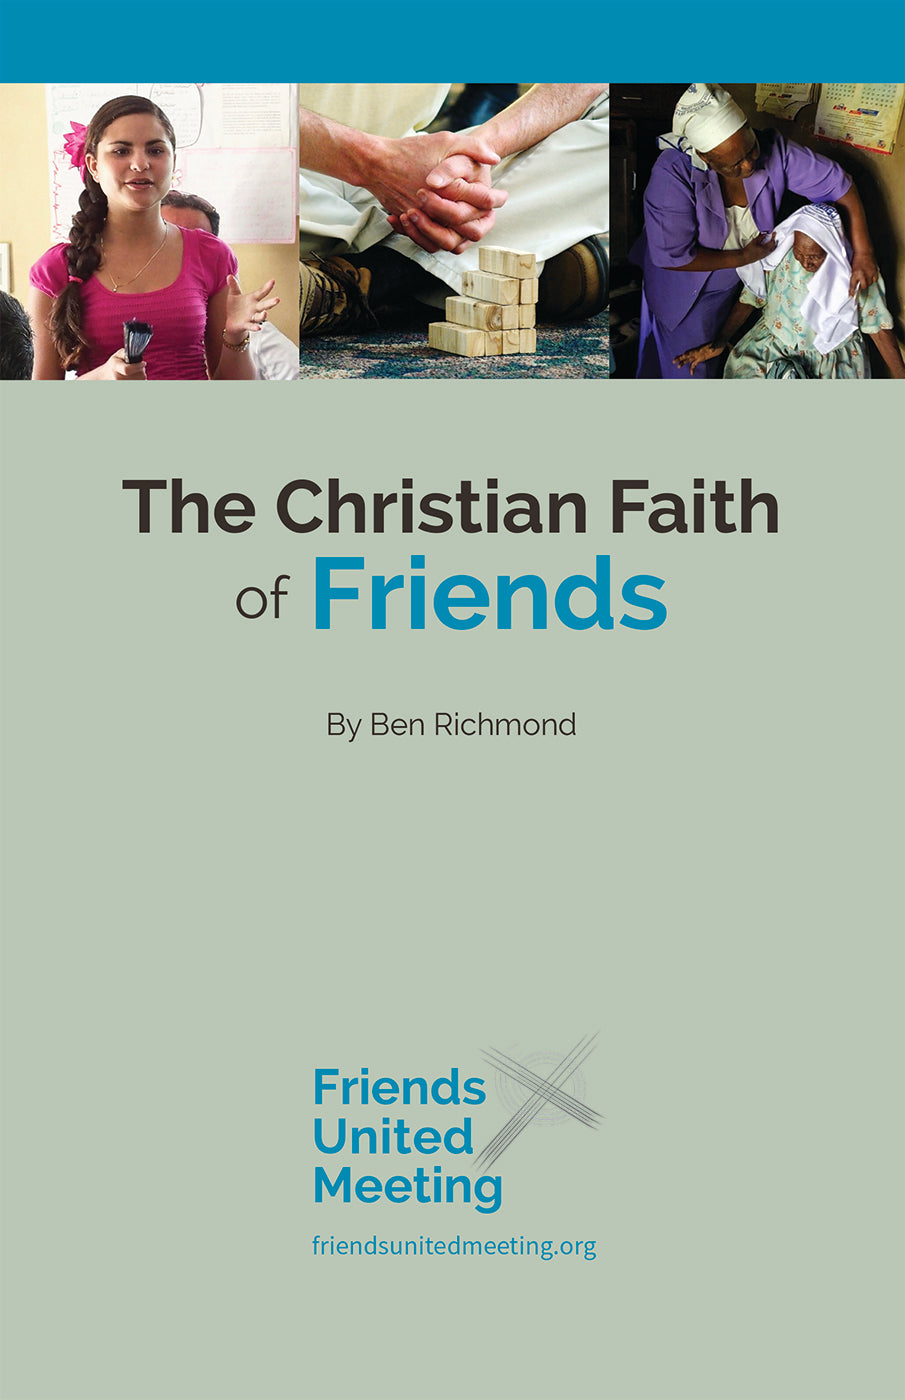 The Christian Faith of Friends